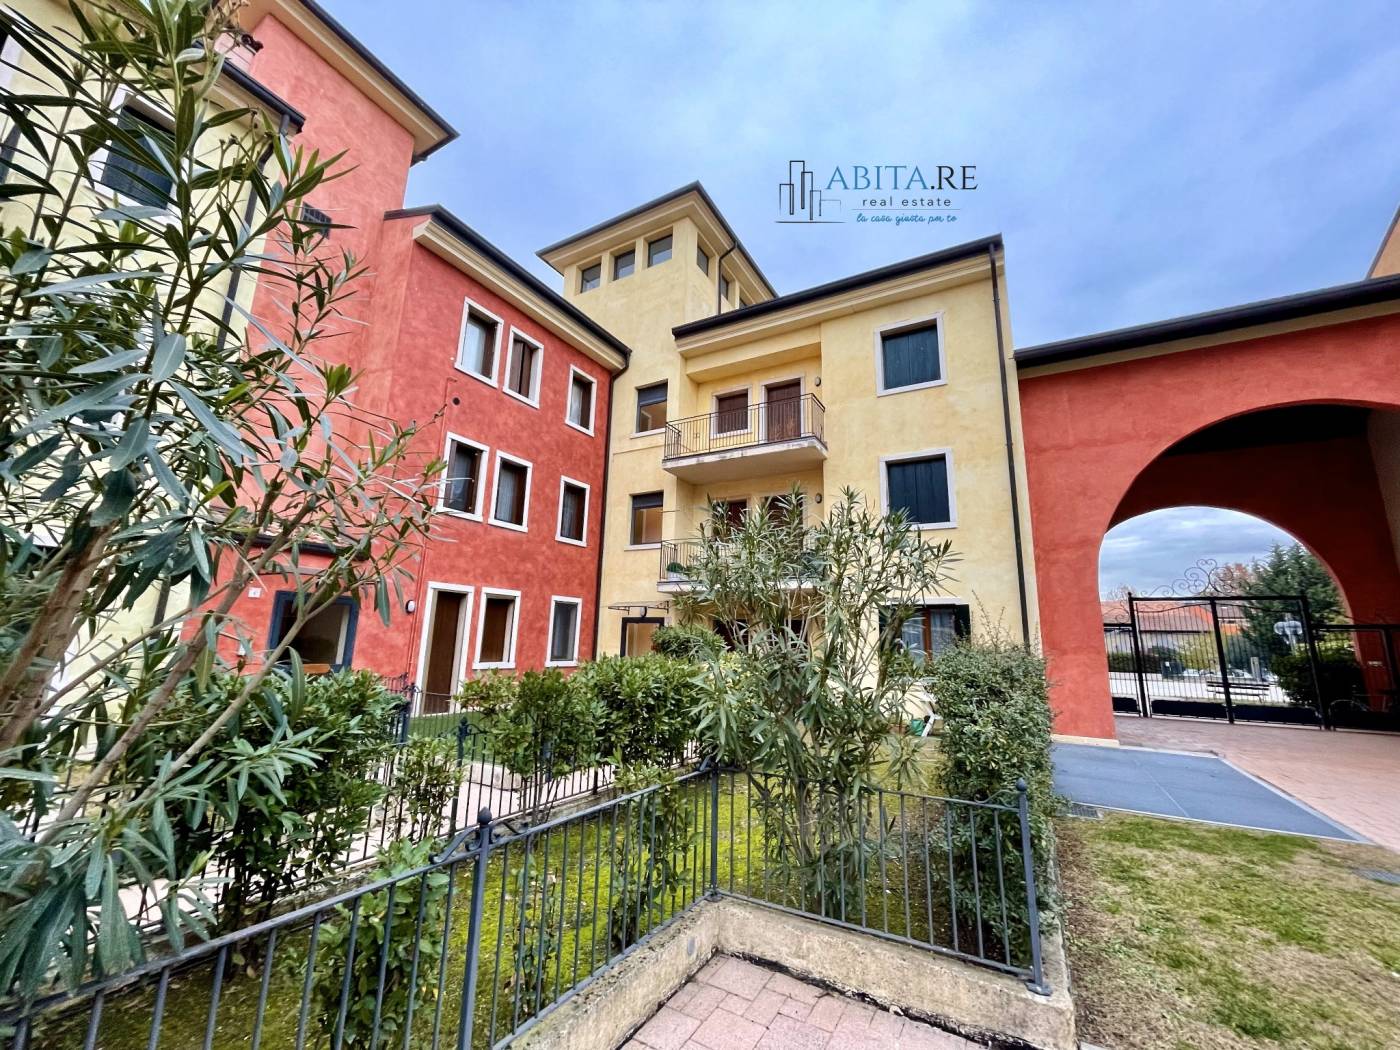 ABITA.RE Real Estate: agenzia immobiliare di San Martino Buon Albergo -  Immobiliare.it